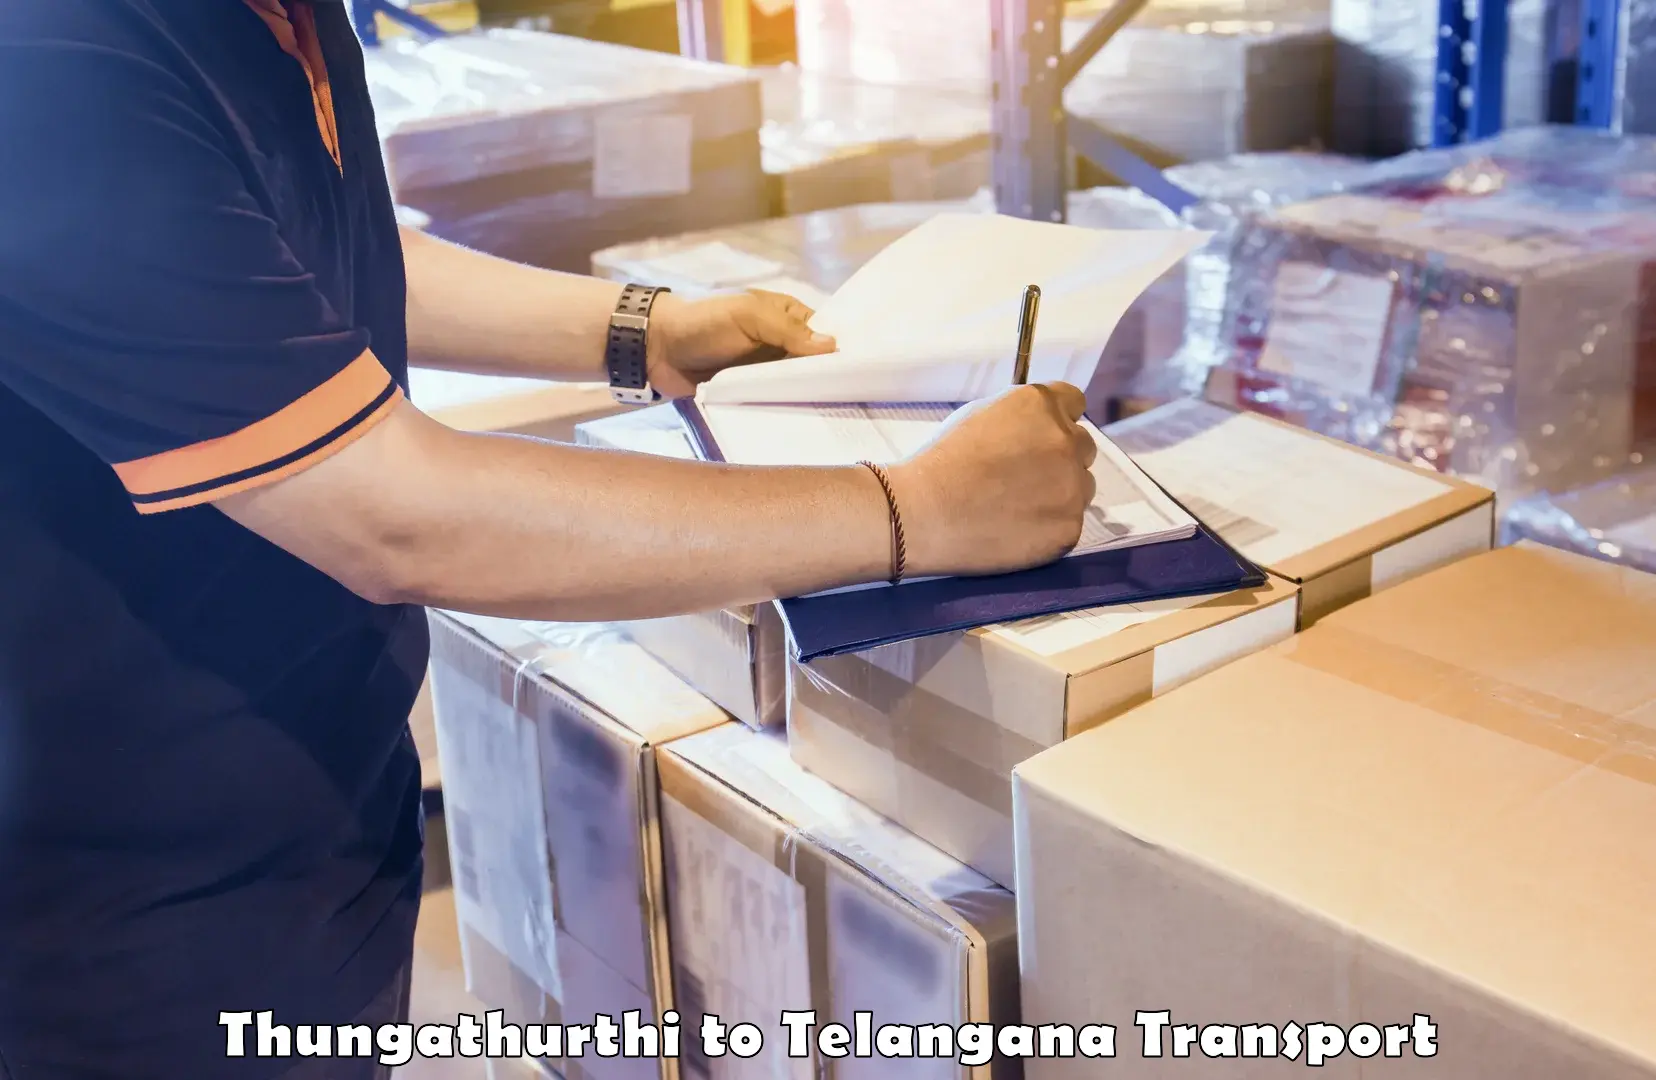 Commercial transport service Thungathurthi to Yerrupalem